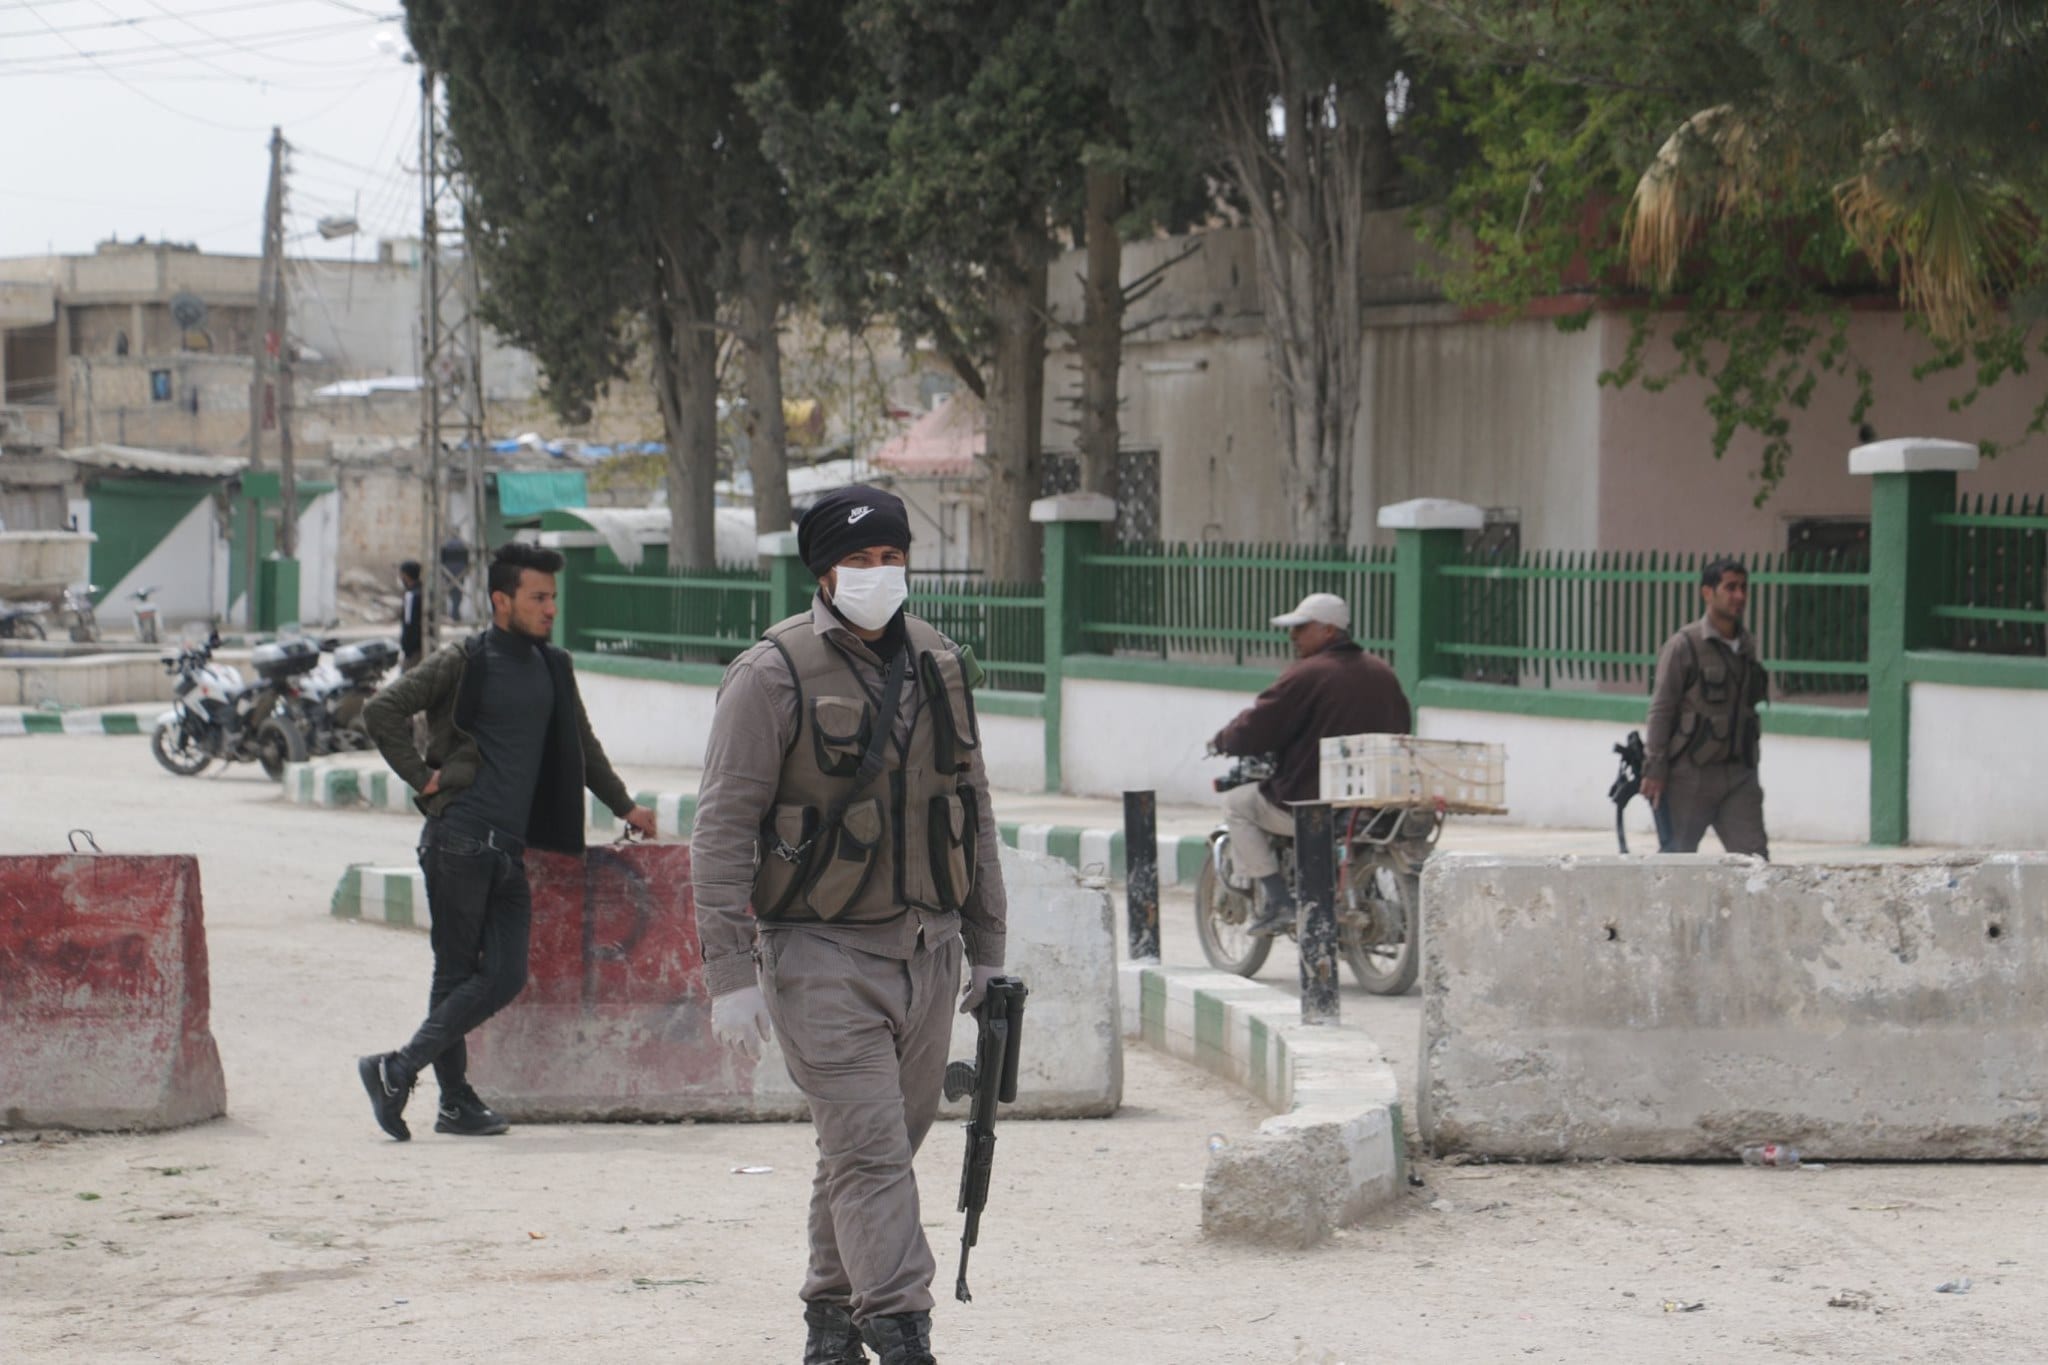 الجيش الوطني يعتقل أحد شيوخ عشيرة “النعيم” في تل أبيض